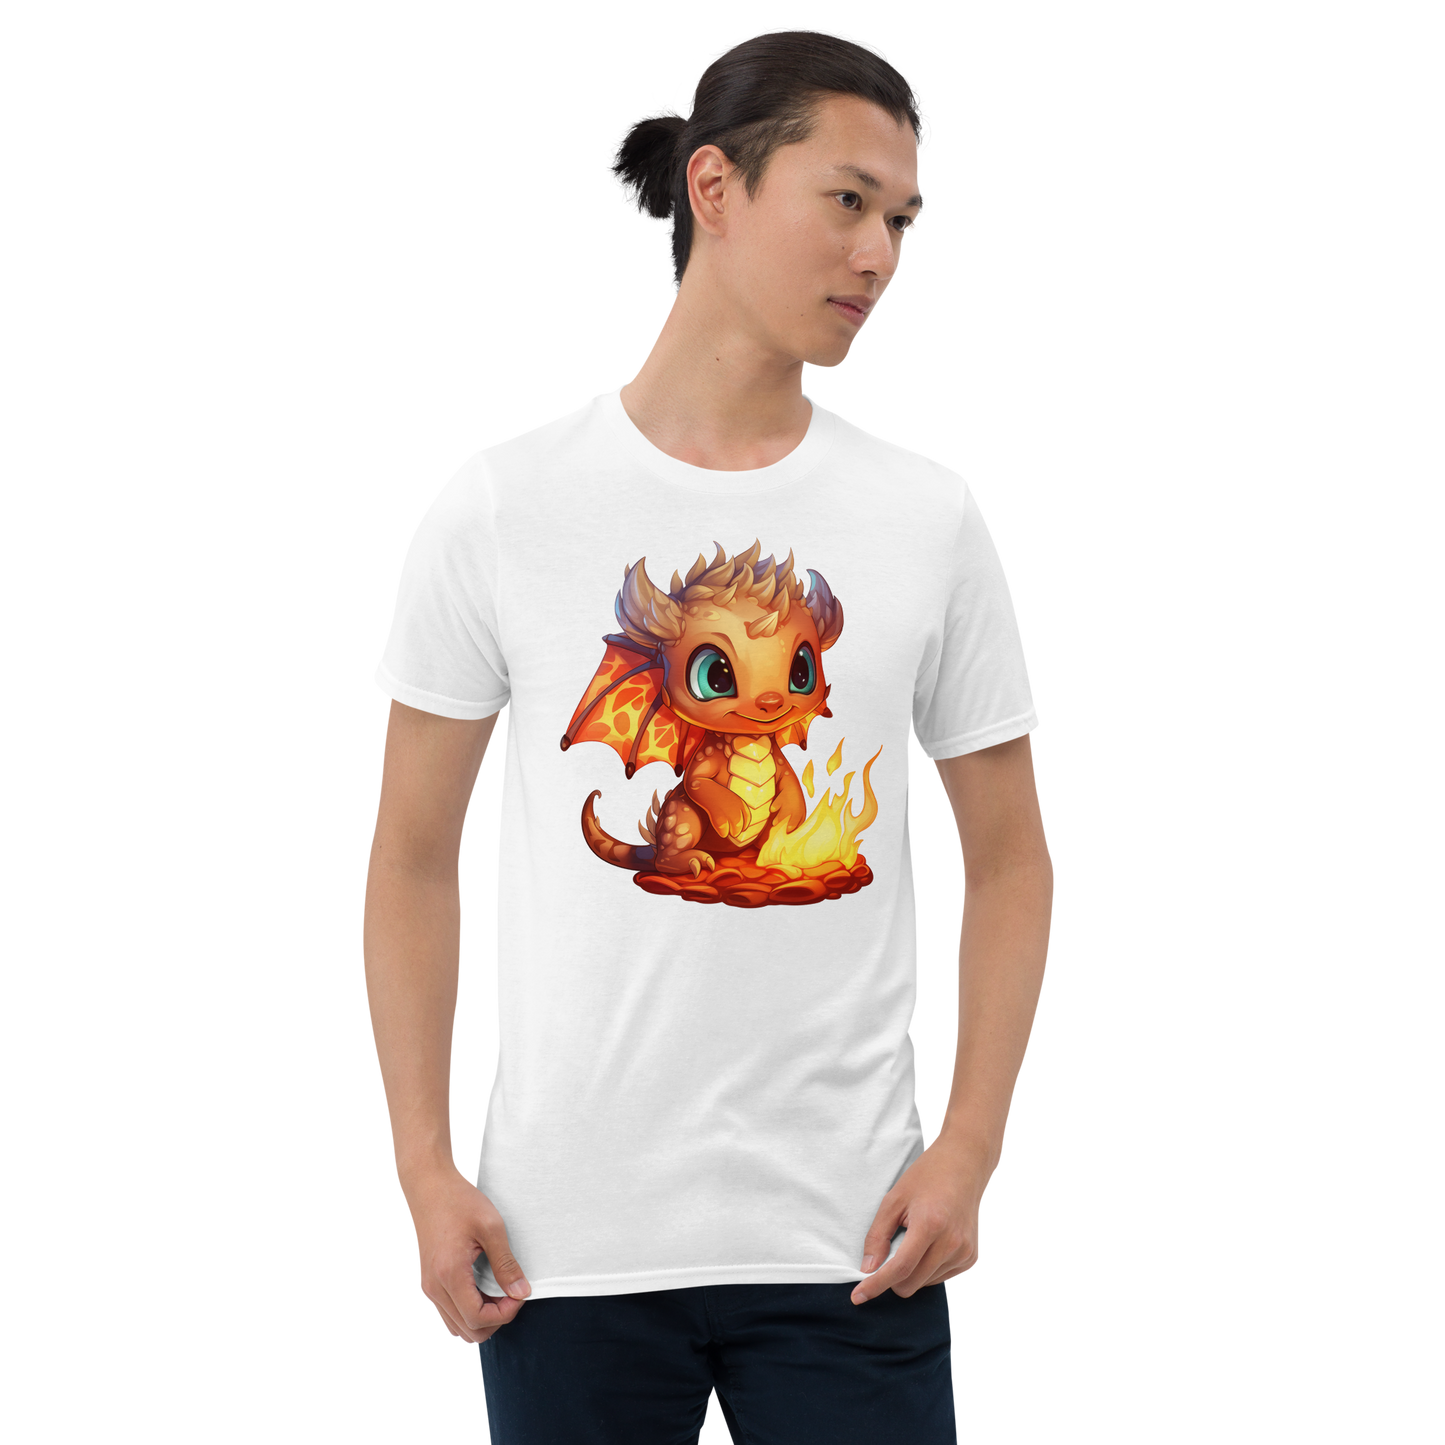 Short-Sleeve T-Shirt - Fire dragon